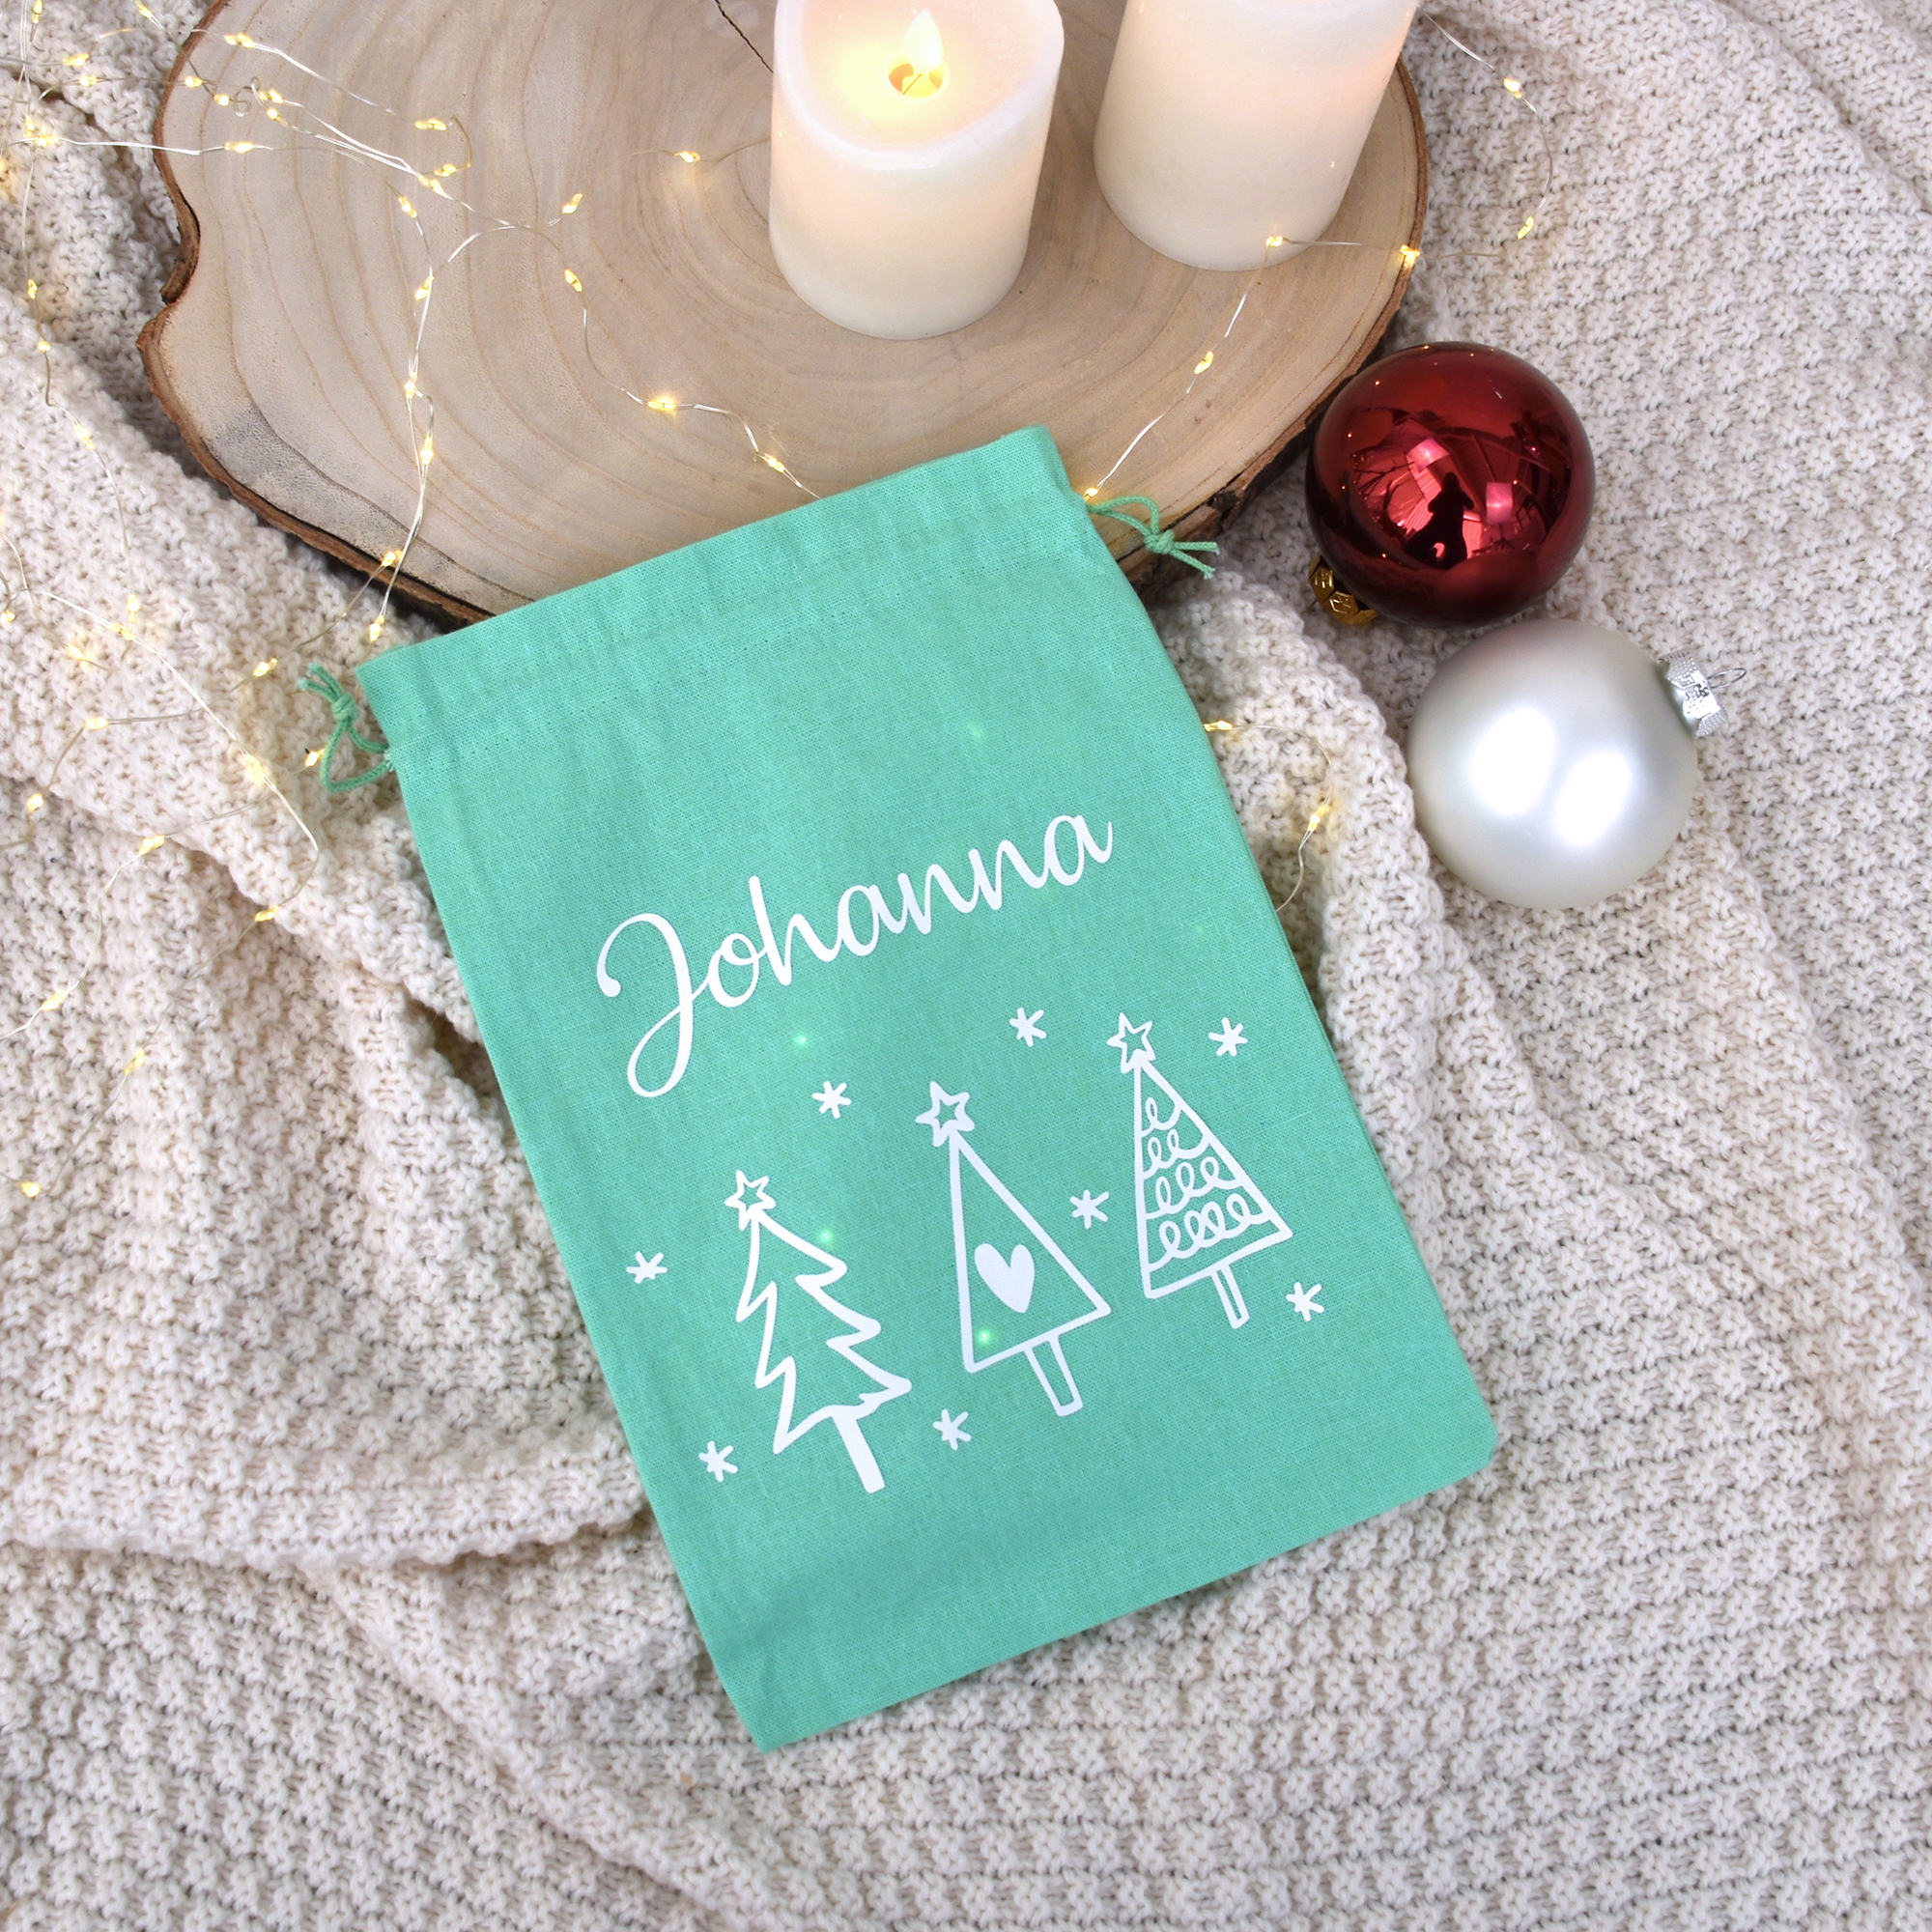 Geschenkbeutel Weihnachten aus Baumwolle in Mint | Tannenbäume und Namen